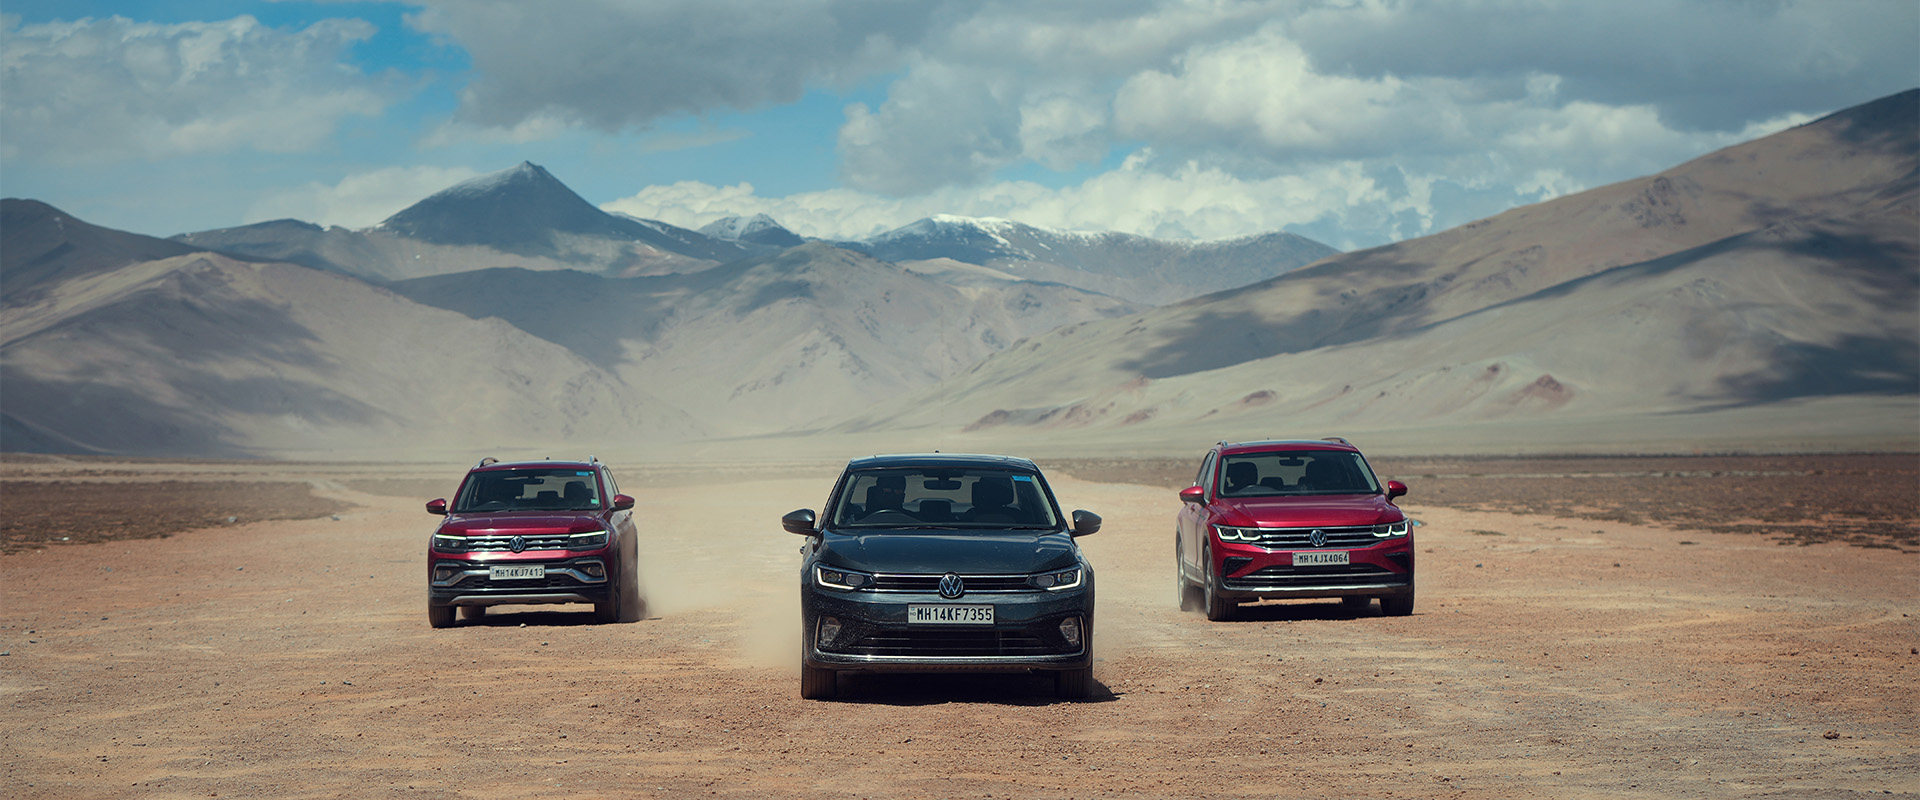 Volkswagen Ladakh Expedition